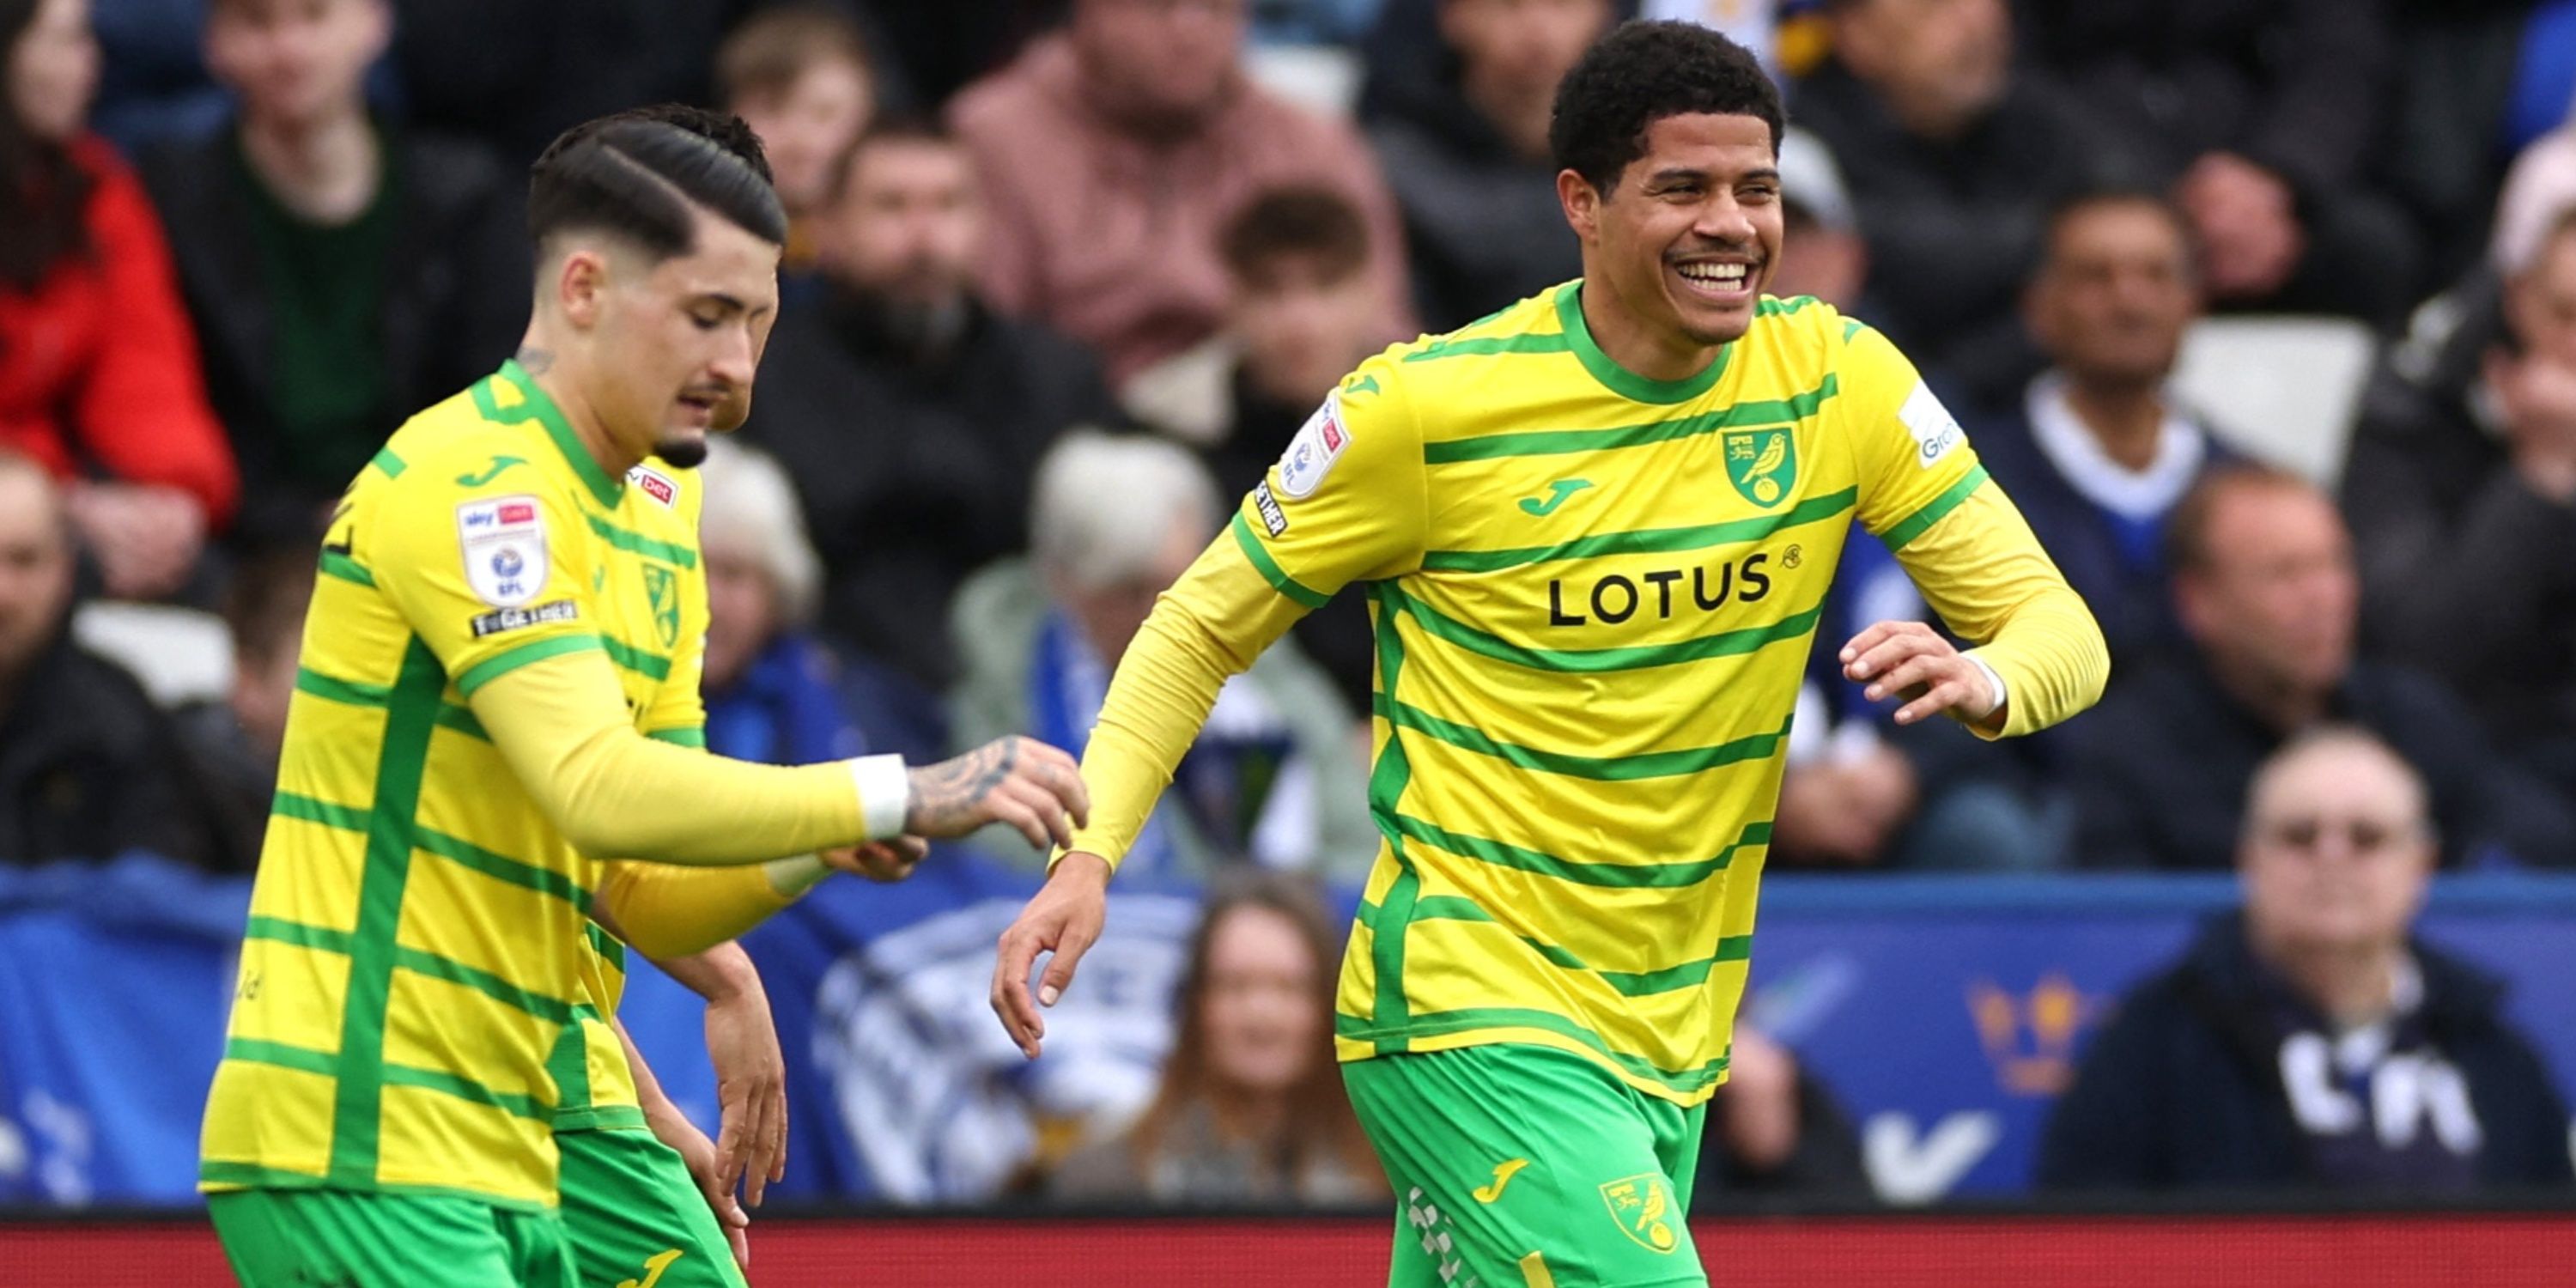 Norwich City midfielder Gabriel Sara celebrating